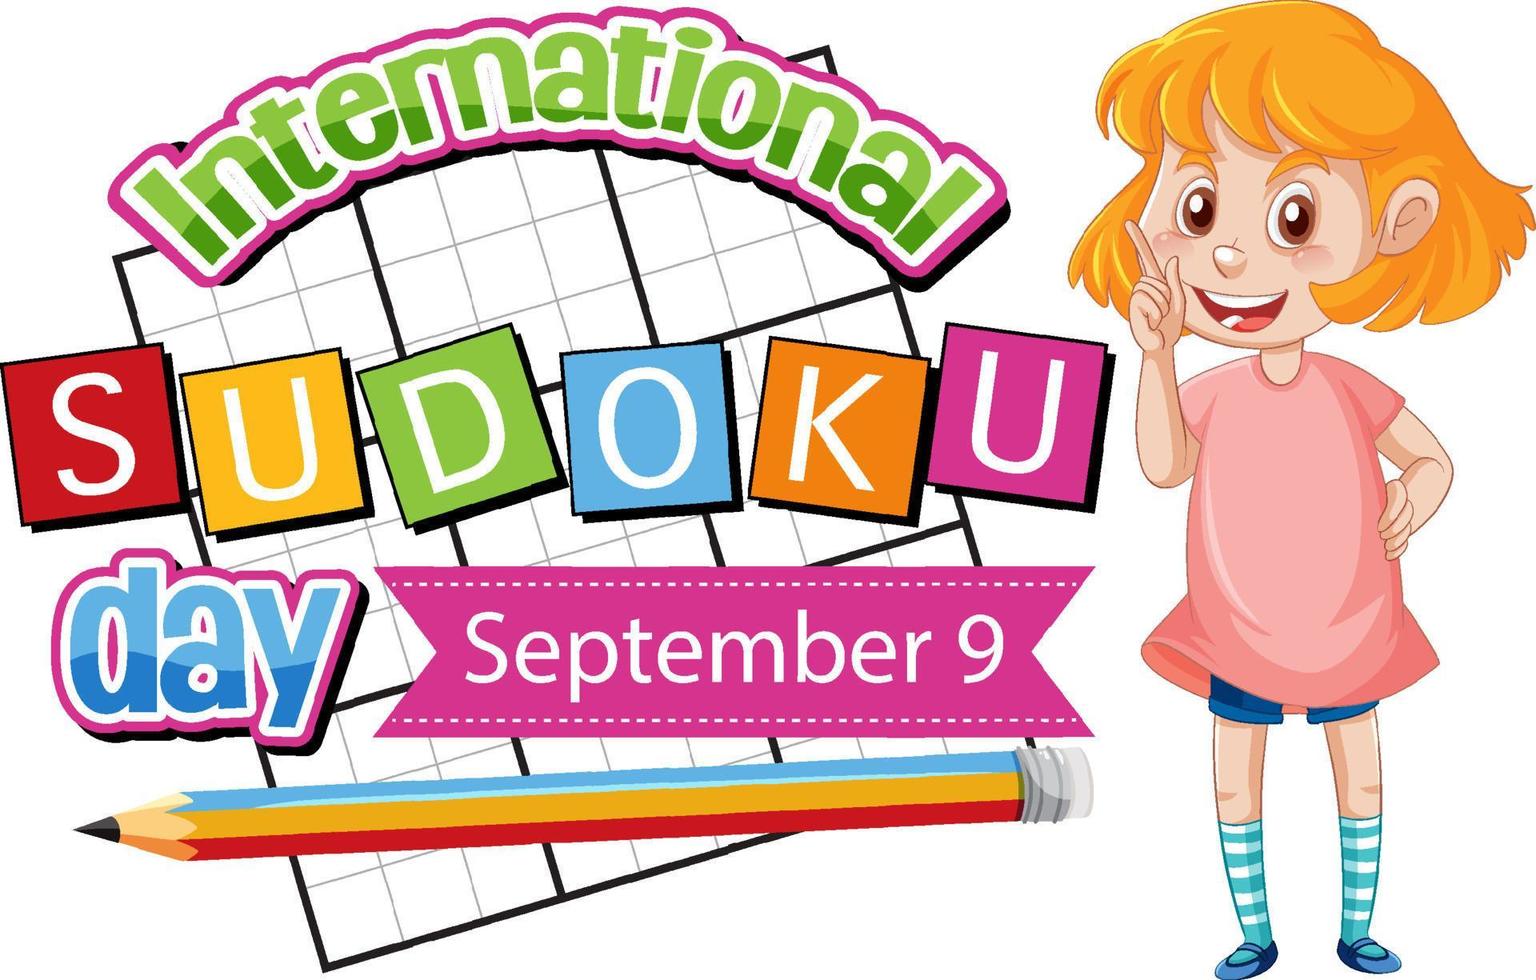 día internacional del sudoku 9 de septiembre vector